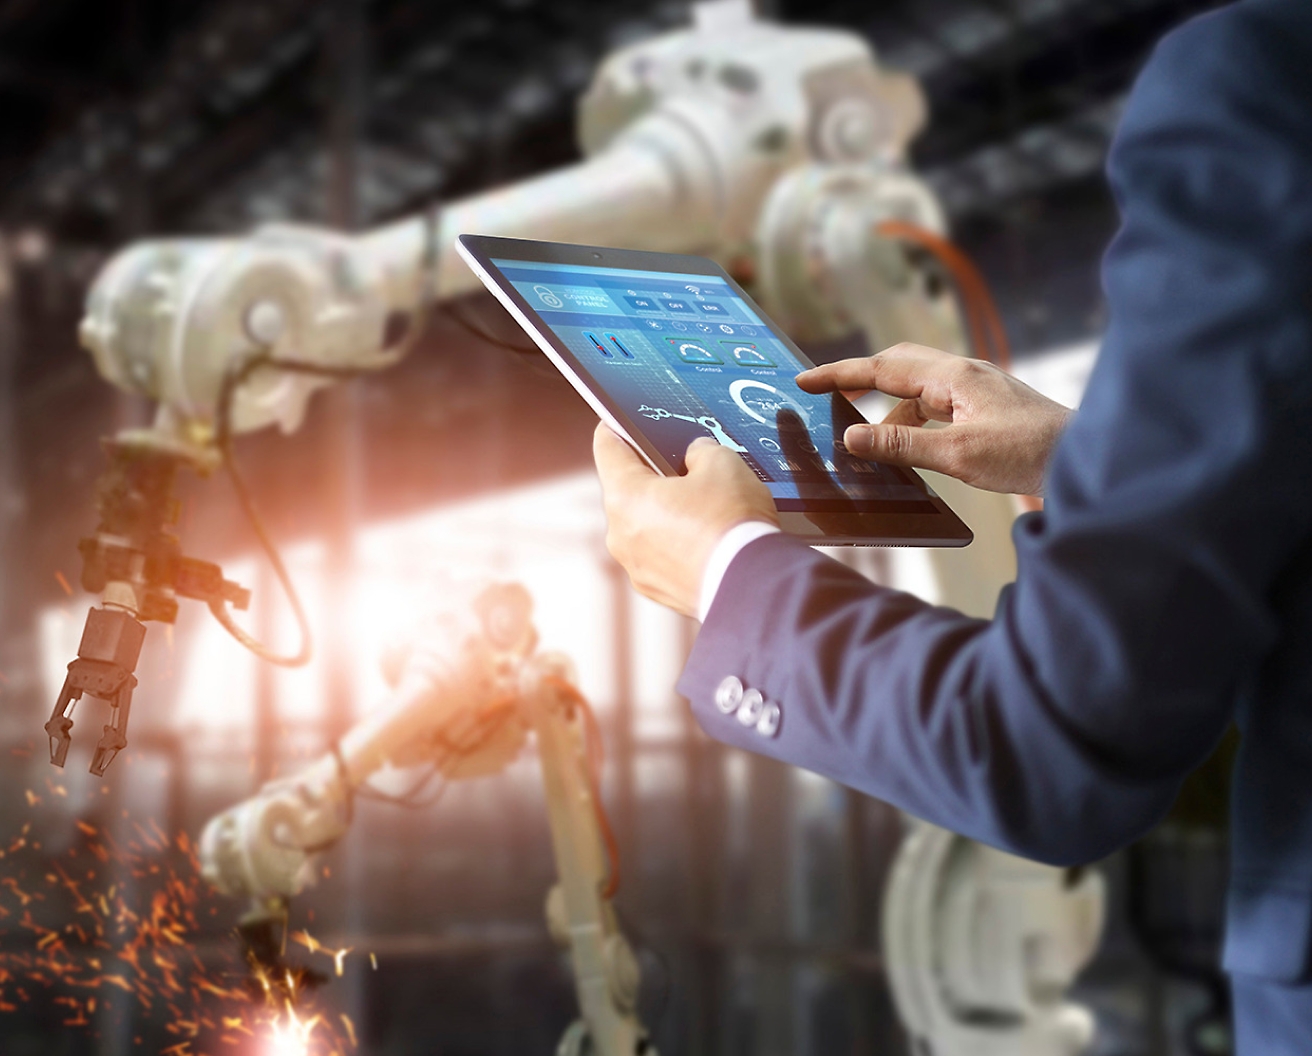 Uma pessoa em uma fábrica controla braços robóticos usando um tablet, dando destaque a tecnologia de automação avançada.